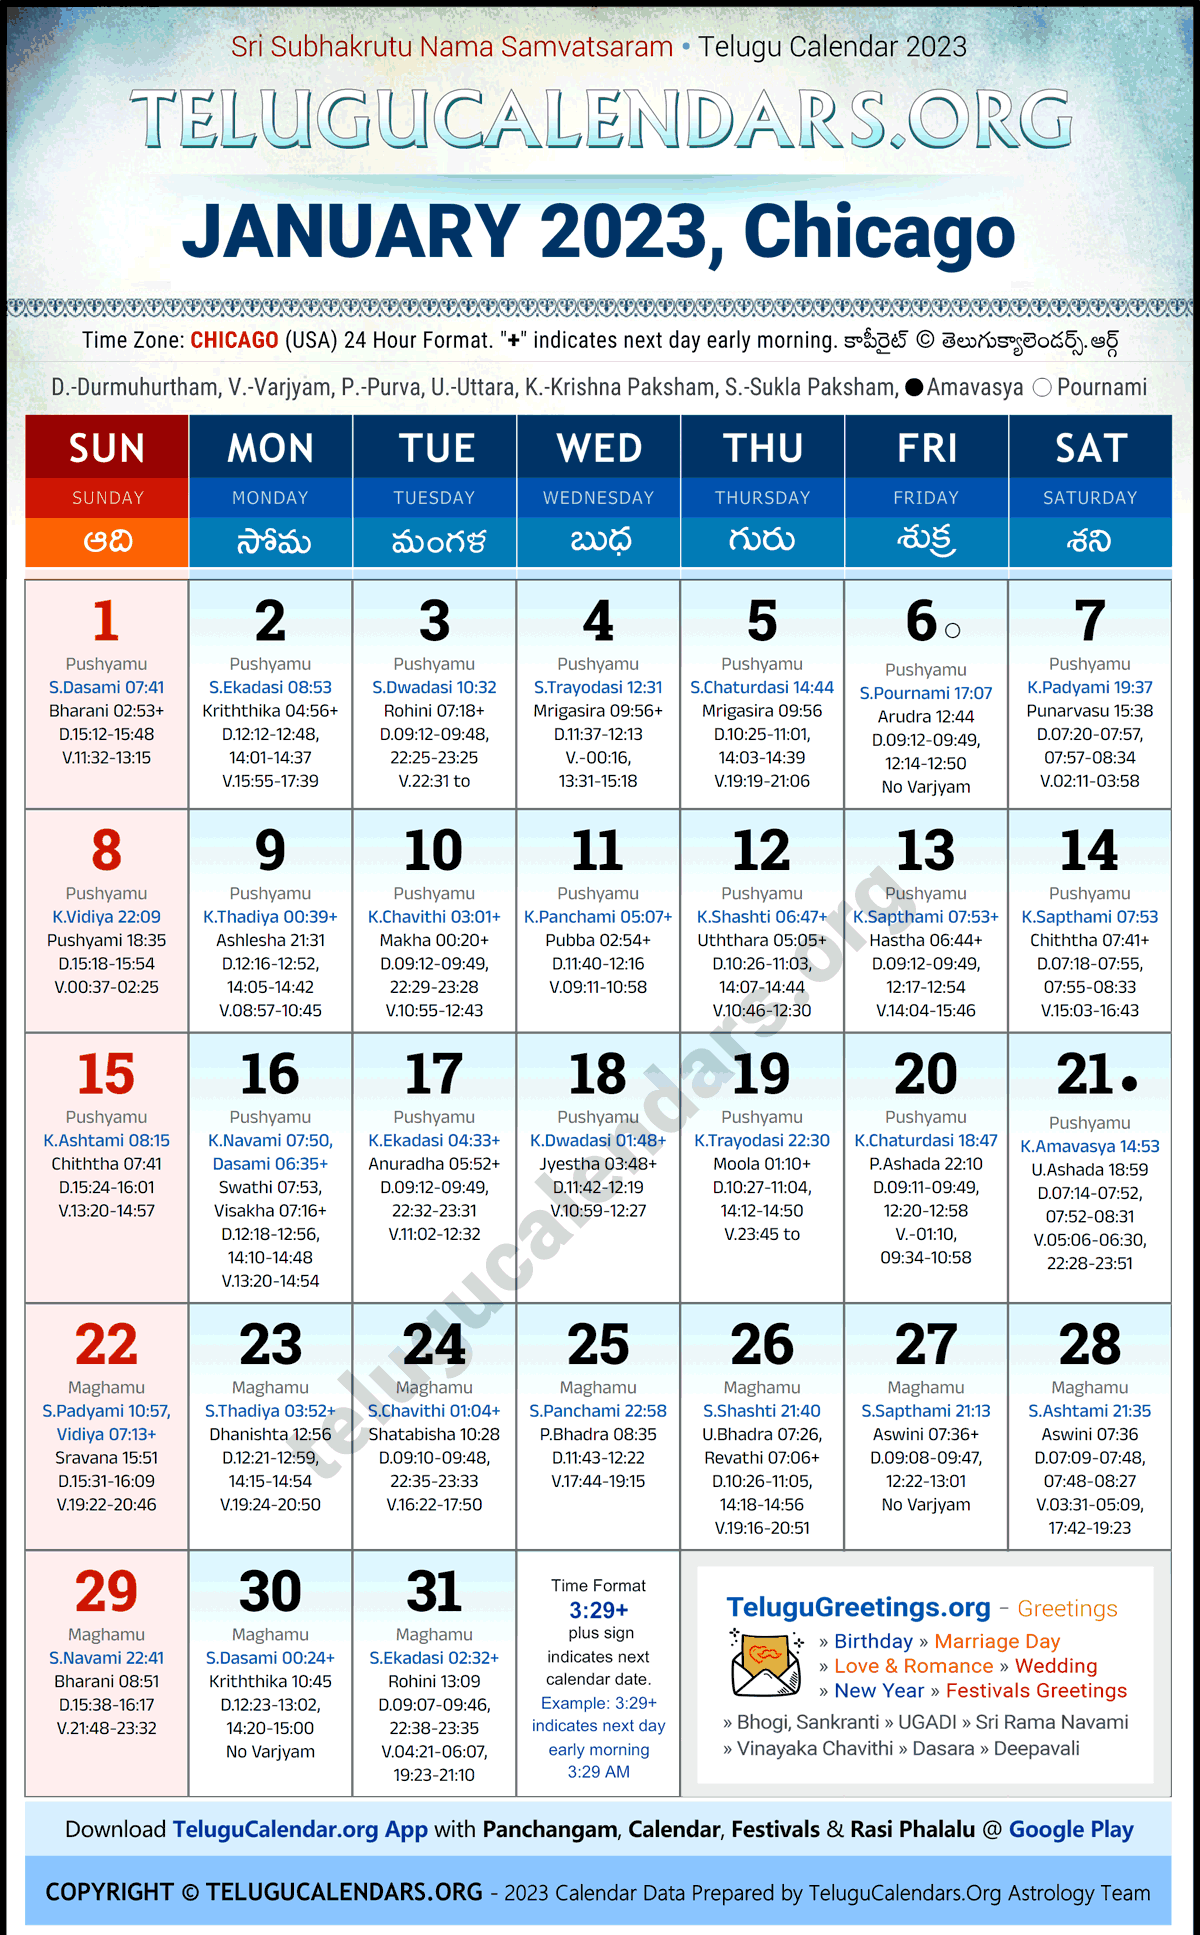 Telugu Calendar 2023 January Festivals for Chicago